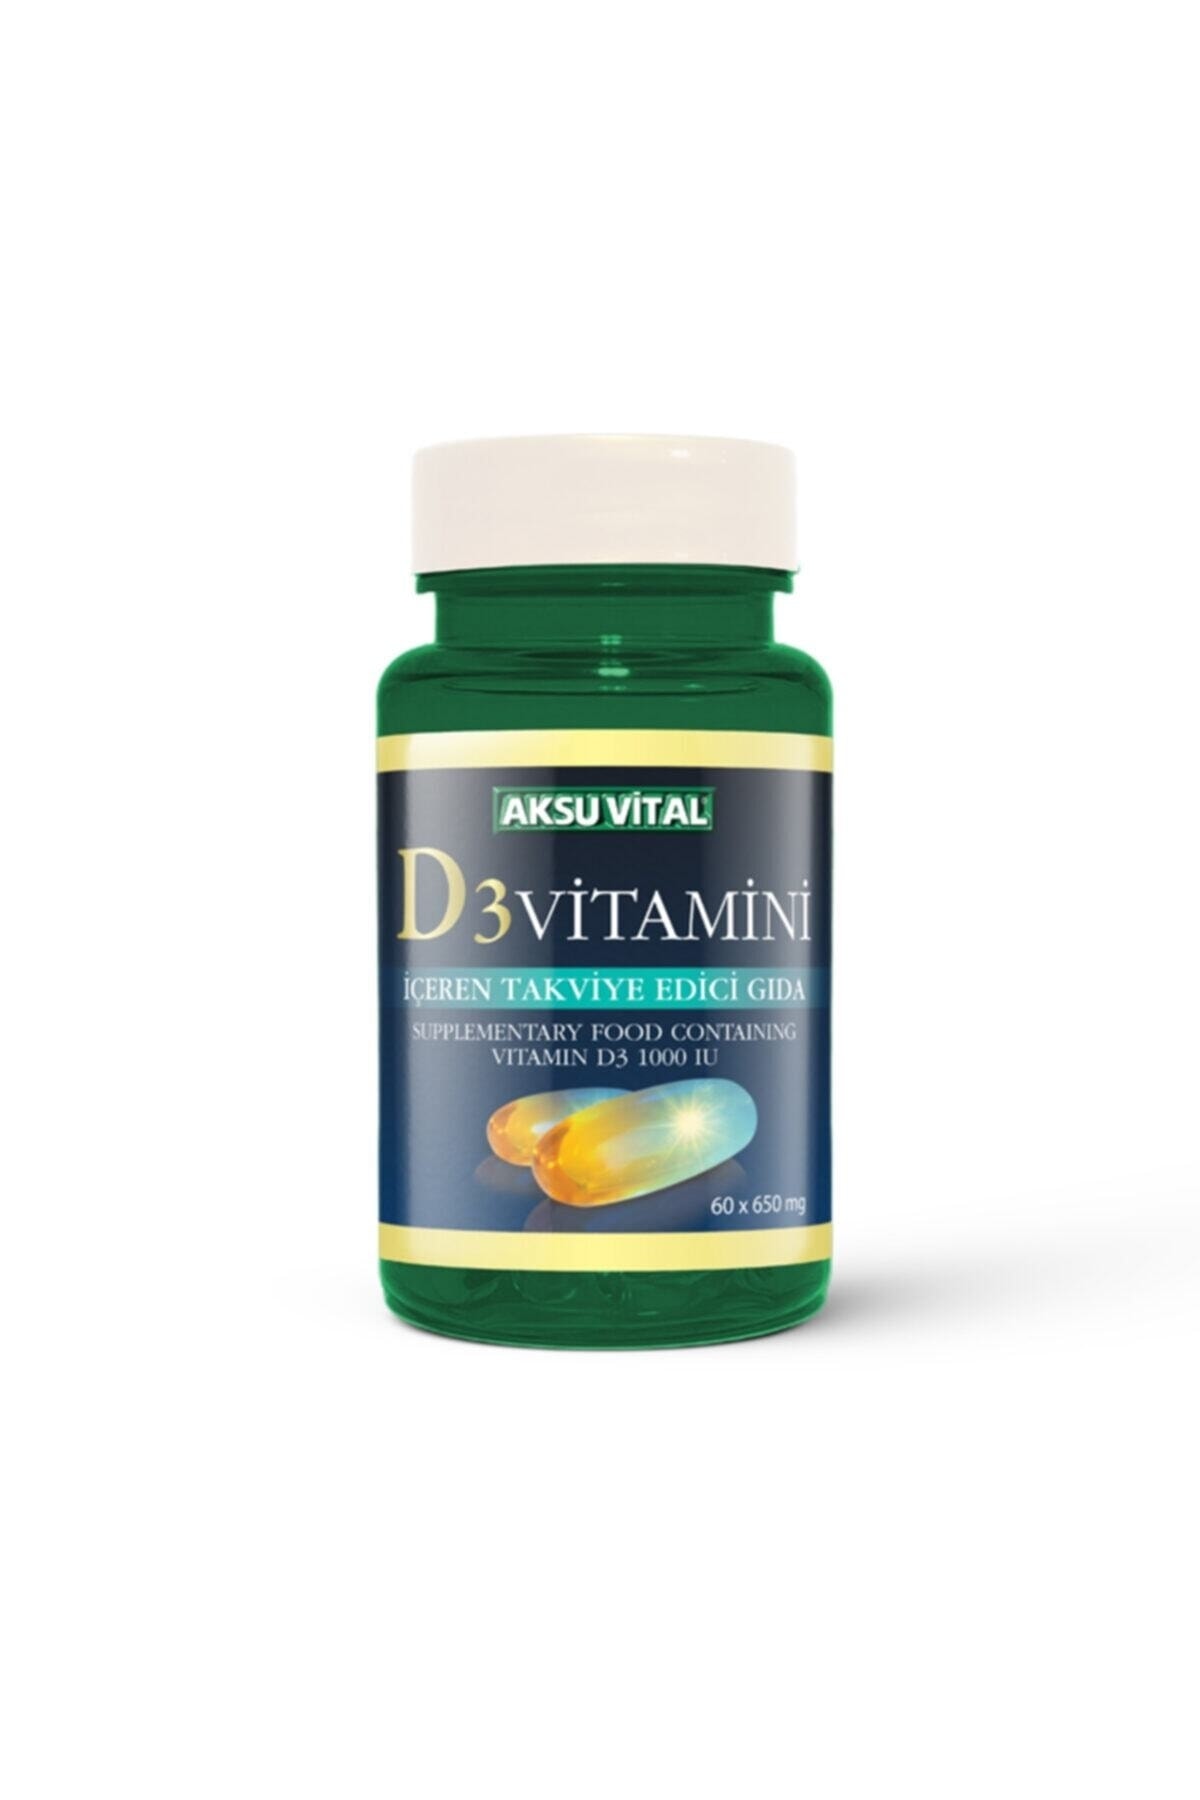 Aksu Vital Vitamin D3 60 Softjel 650 mg